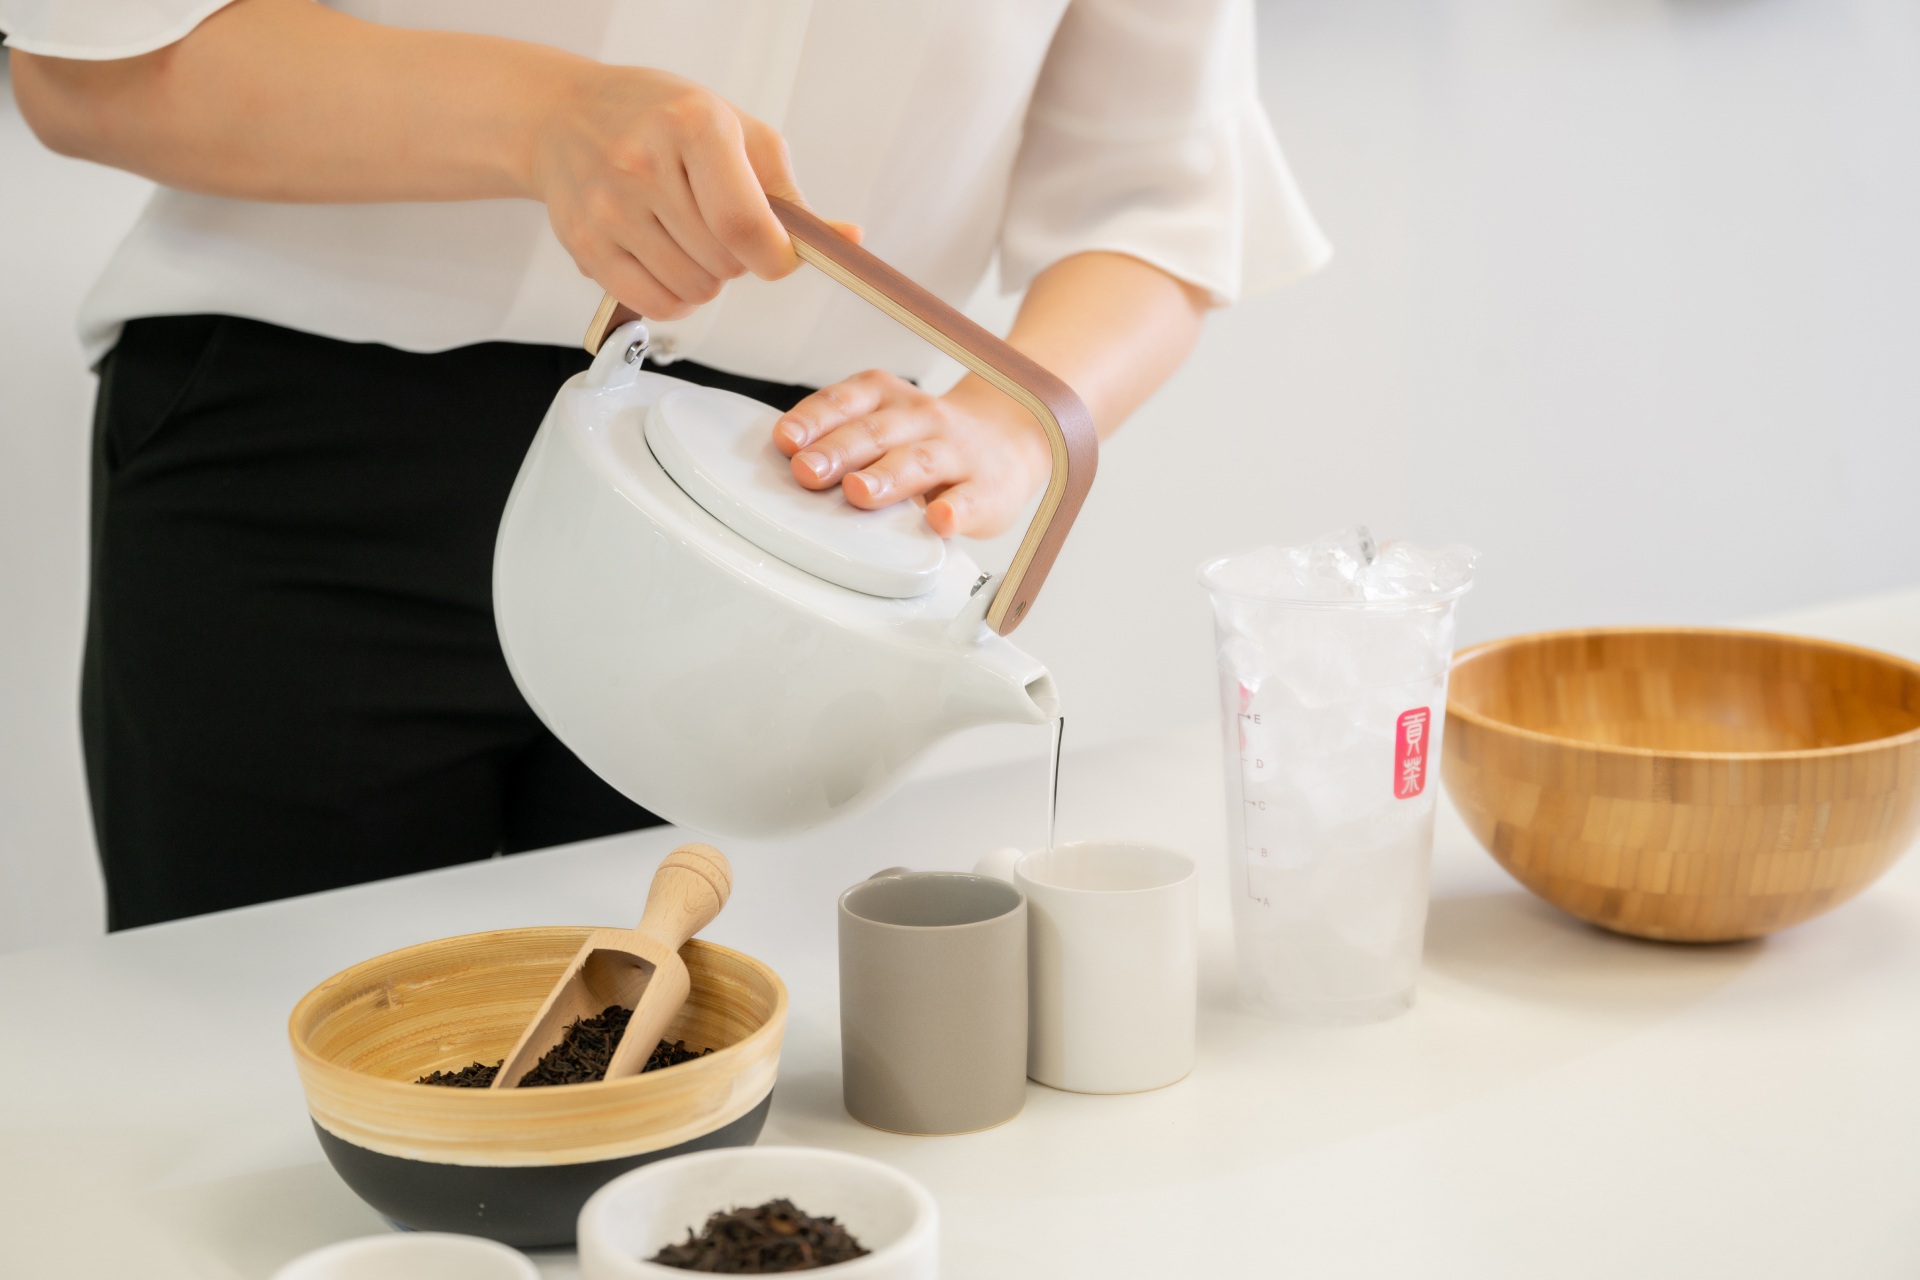 Preparar y servir el té de Gong Cha